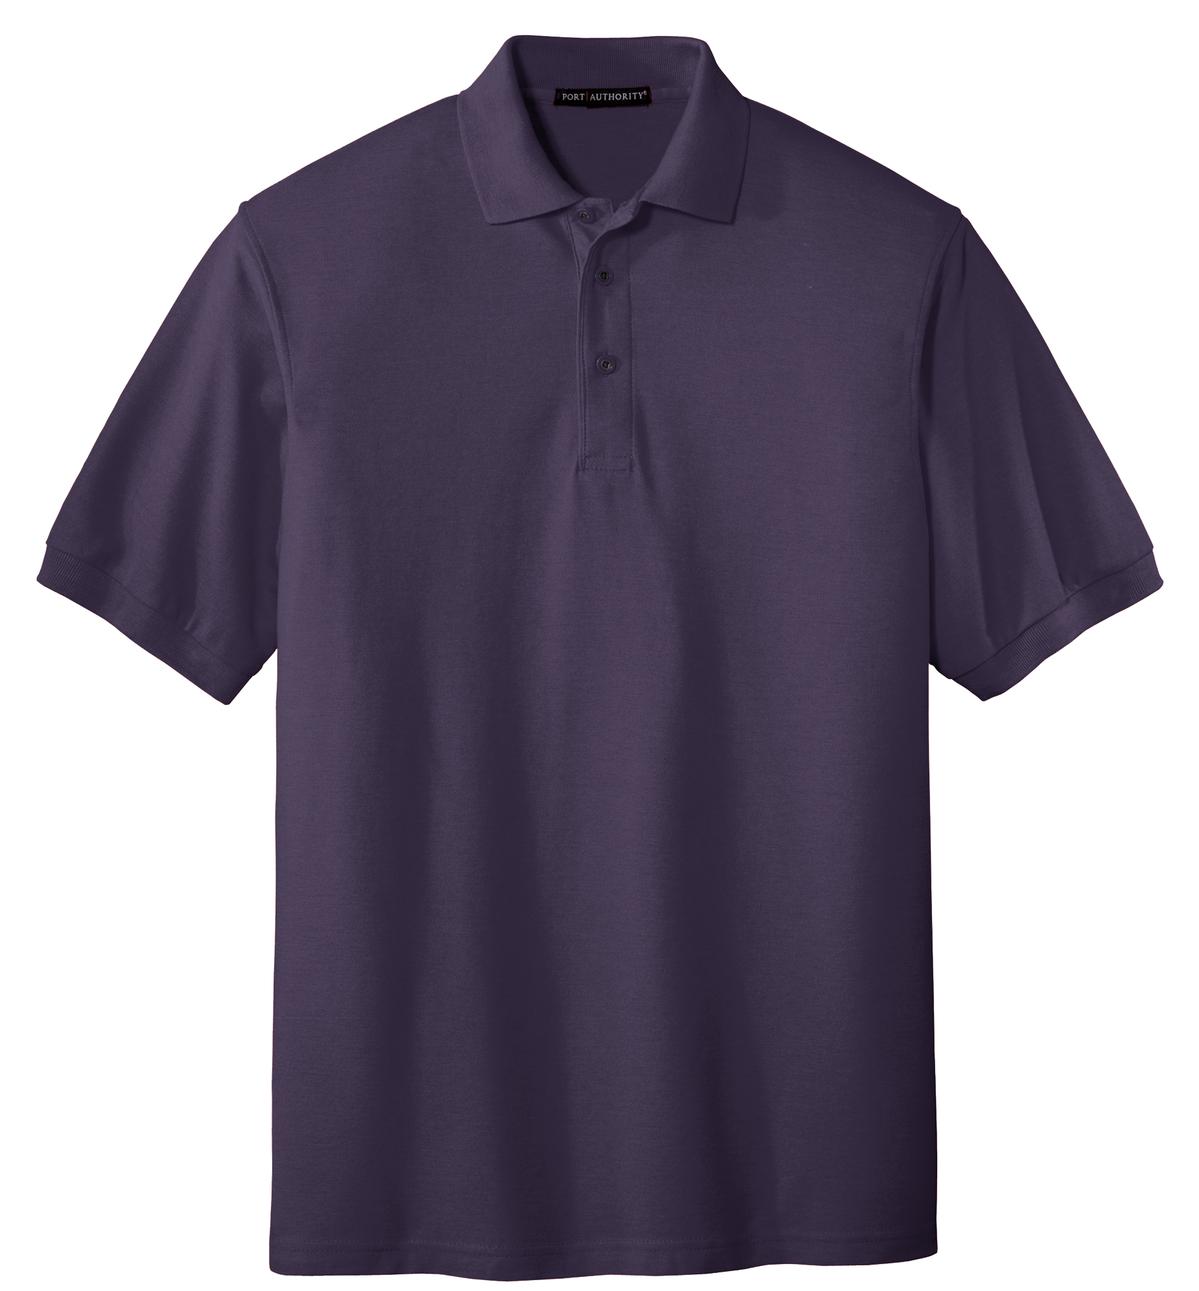 [Custom] Cotton Blend Polo (Unisex) (Colors: Blue, Purple) [K500]